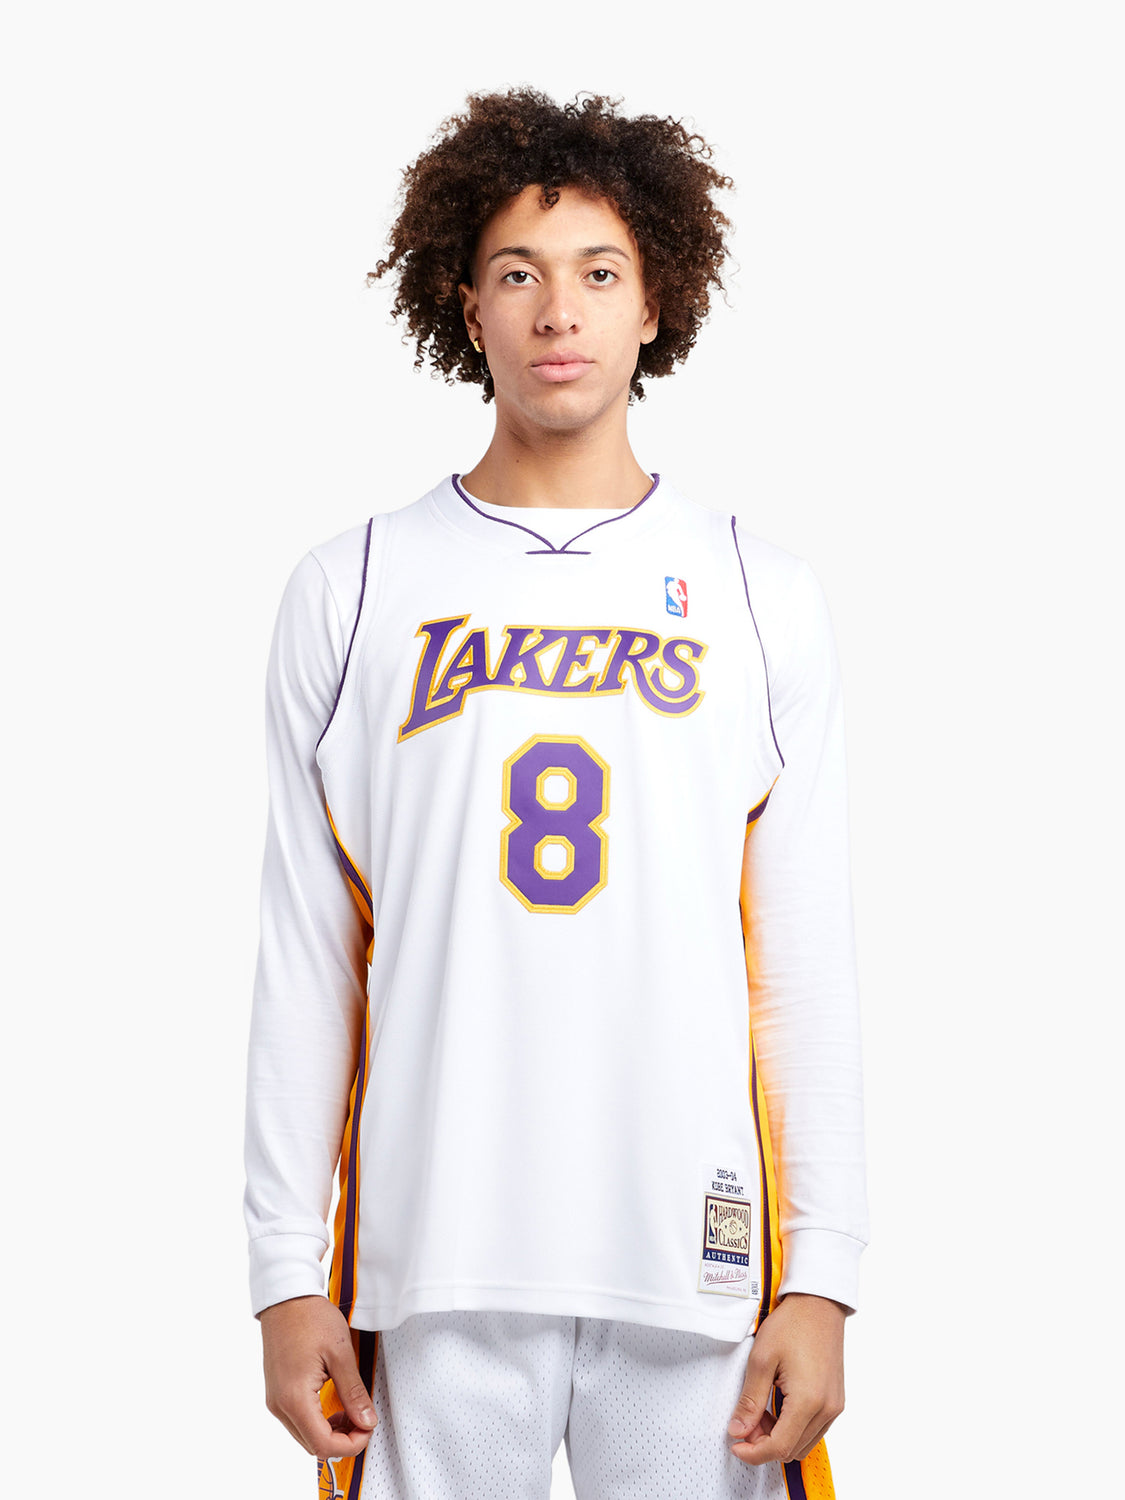 Mitchell & Ness Nba Authentic Kobe Bryant La Lakers 03-04